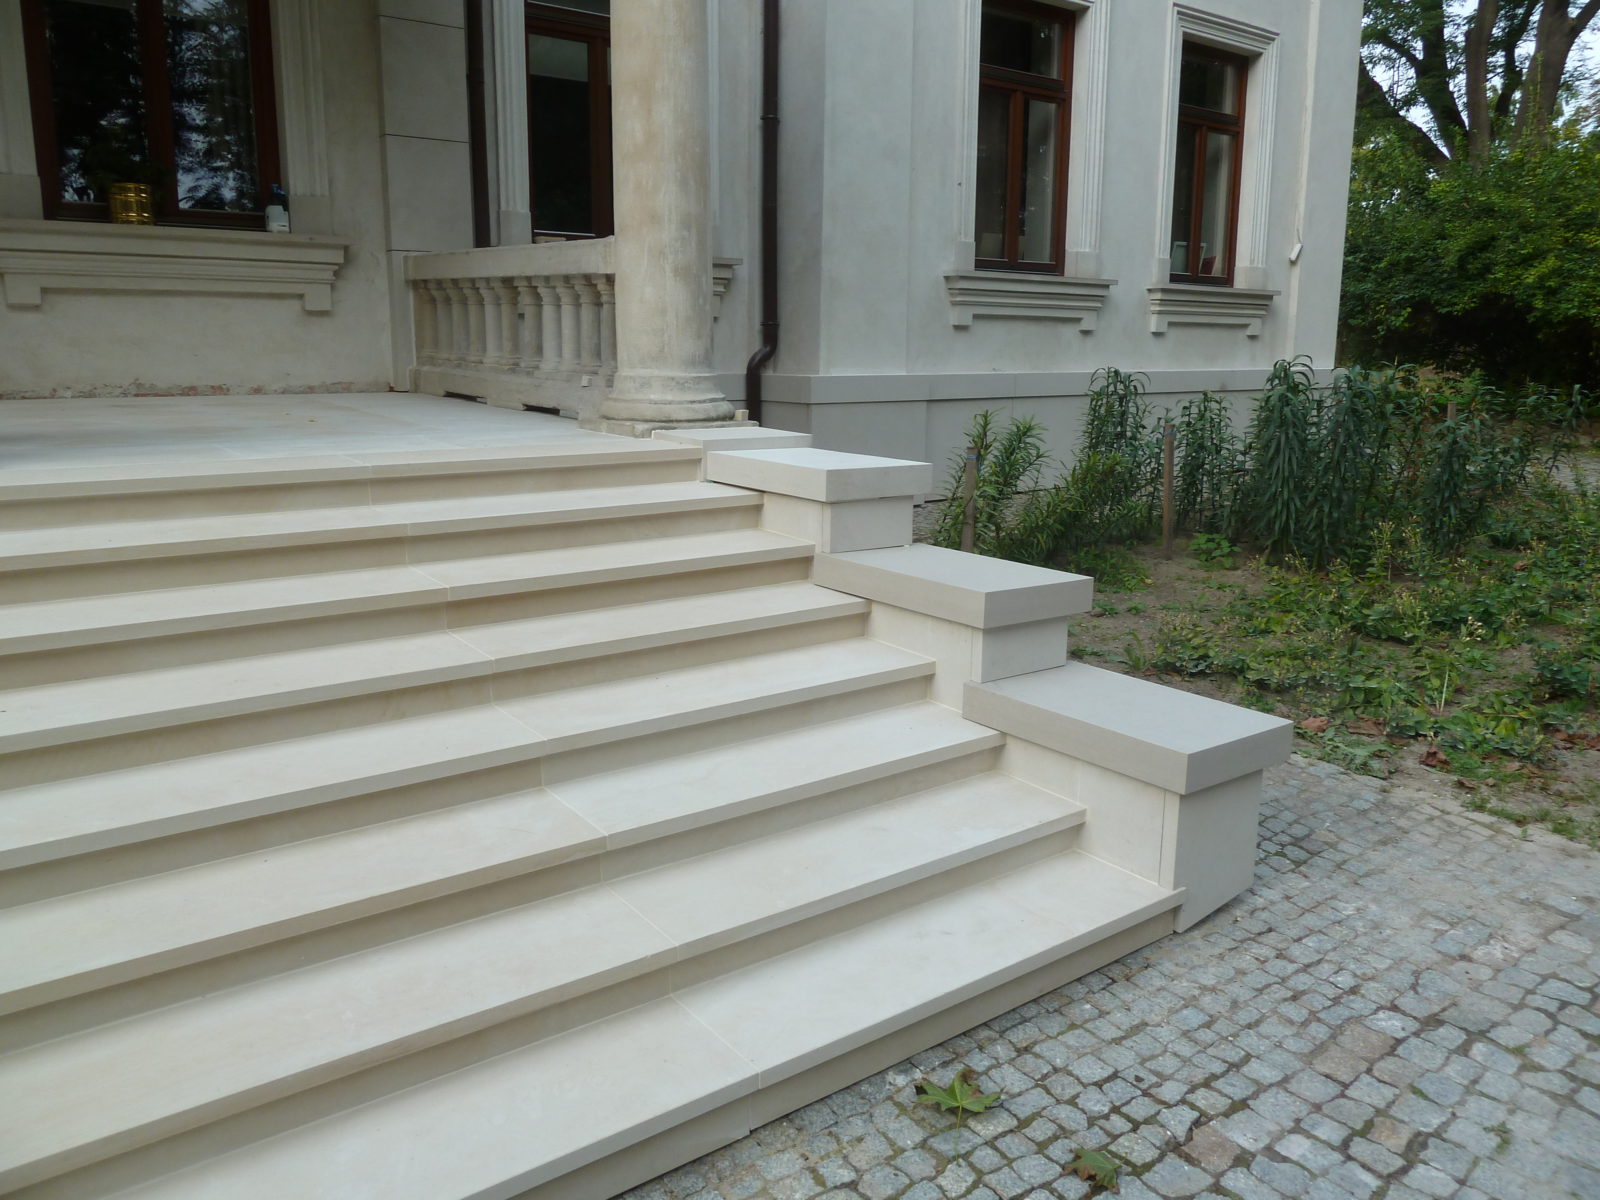 KAMBO renowacja i kompleksowe prace kamieniarskie elewacja schody balustrady detale kamienne